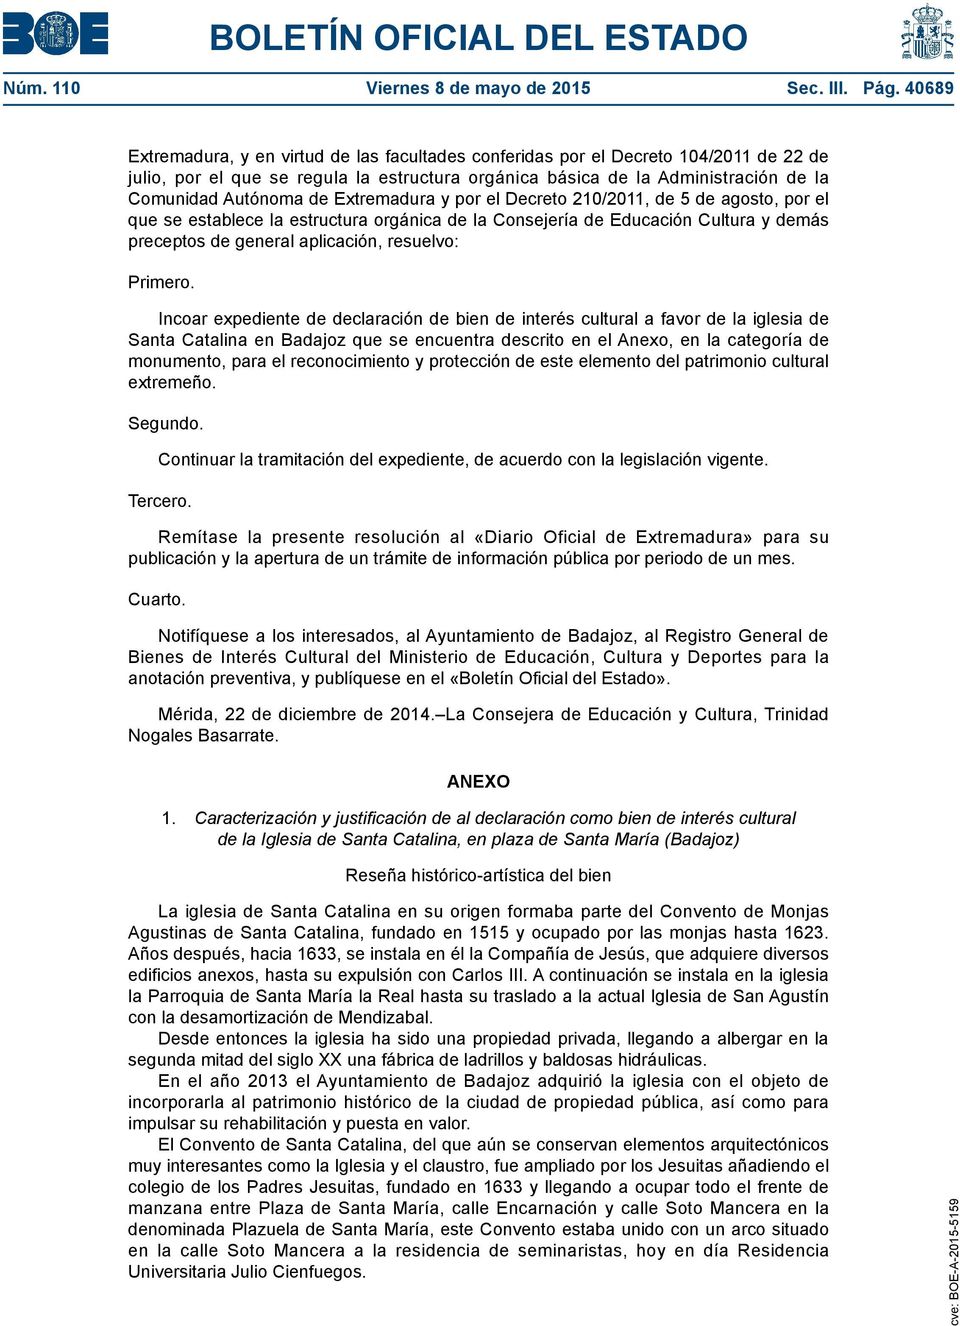 Extremadura y por el Decreto 210/2011, de 5 de agosto, por el que se establece la estructura orgánica de la Consejería de Educación Cultura y demás preceptos de general aplicación, resuelvo: Primero.